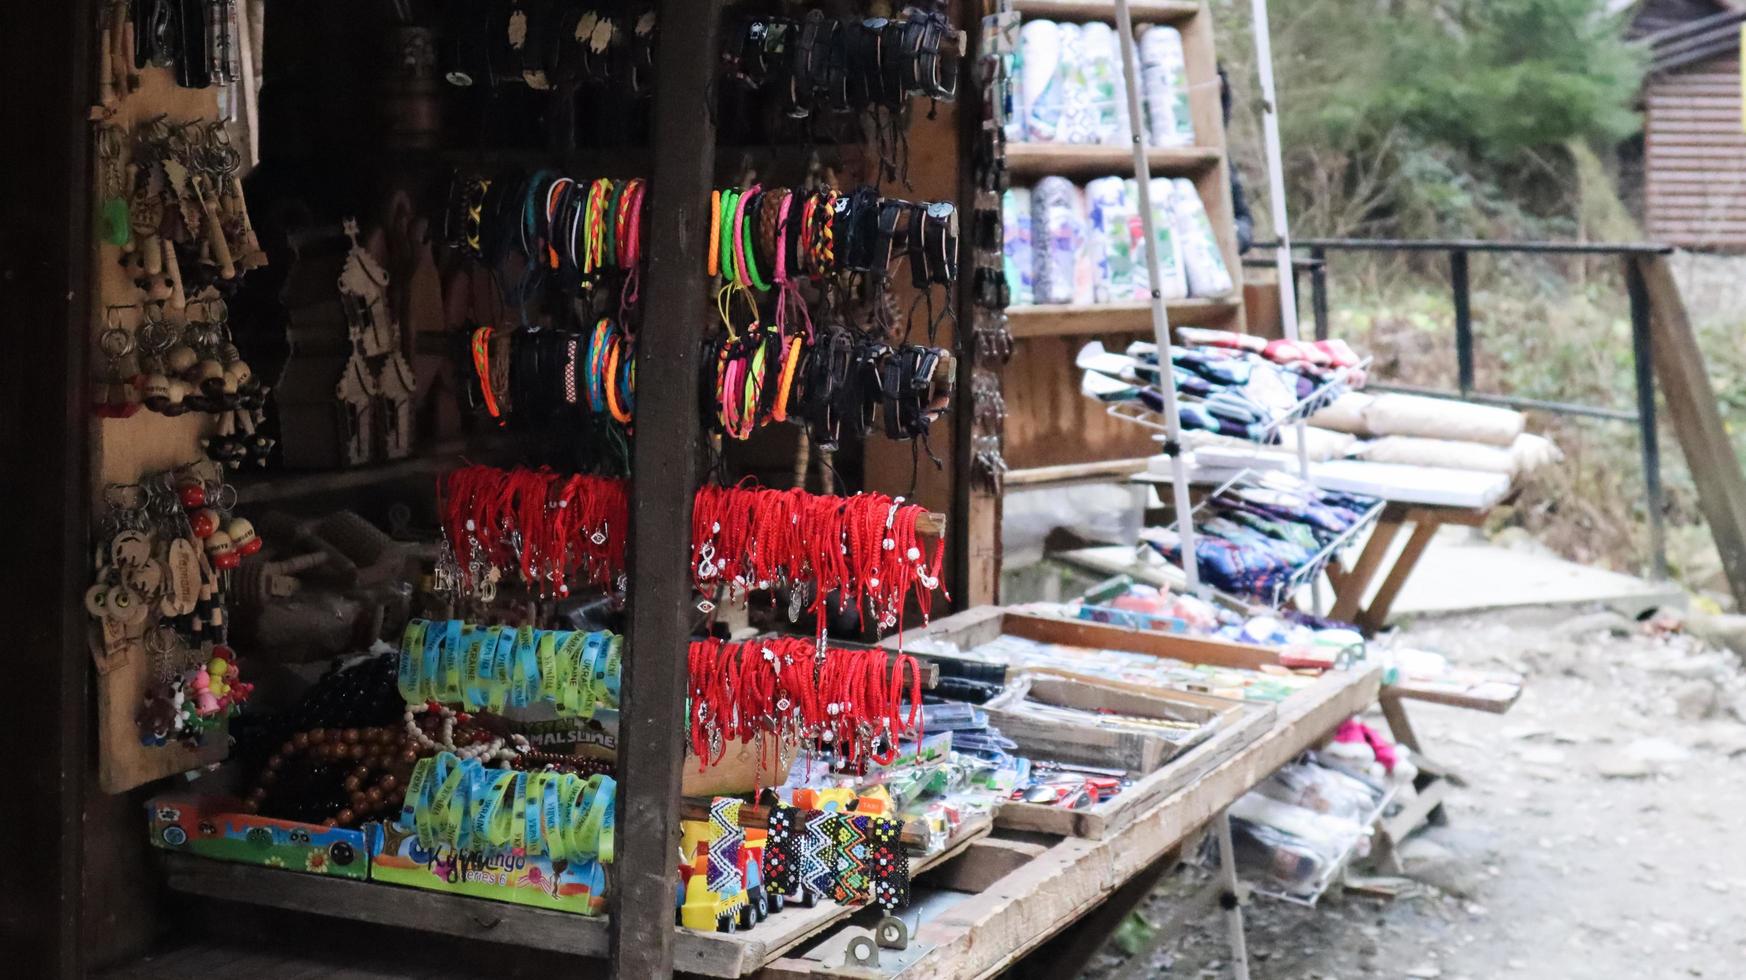 mercado de recuerdos en Yaremche con ropa tradicional de los Cárpatos, hierbas y herramientas de madera. textiles ucranianos, calcetines de punto, chalecos, sombreros. ucrania, yaremche - 20 de noviembre de 2019 foto